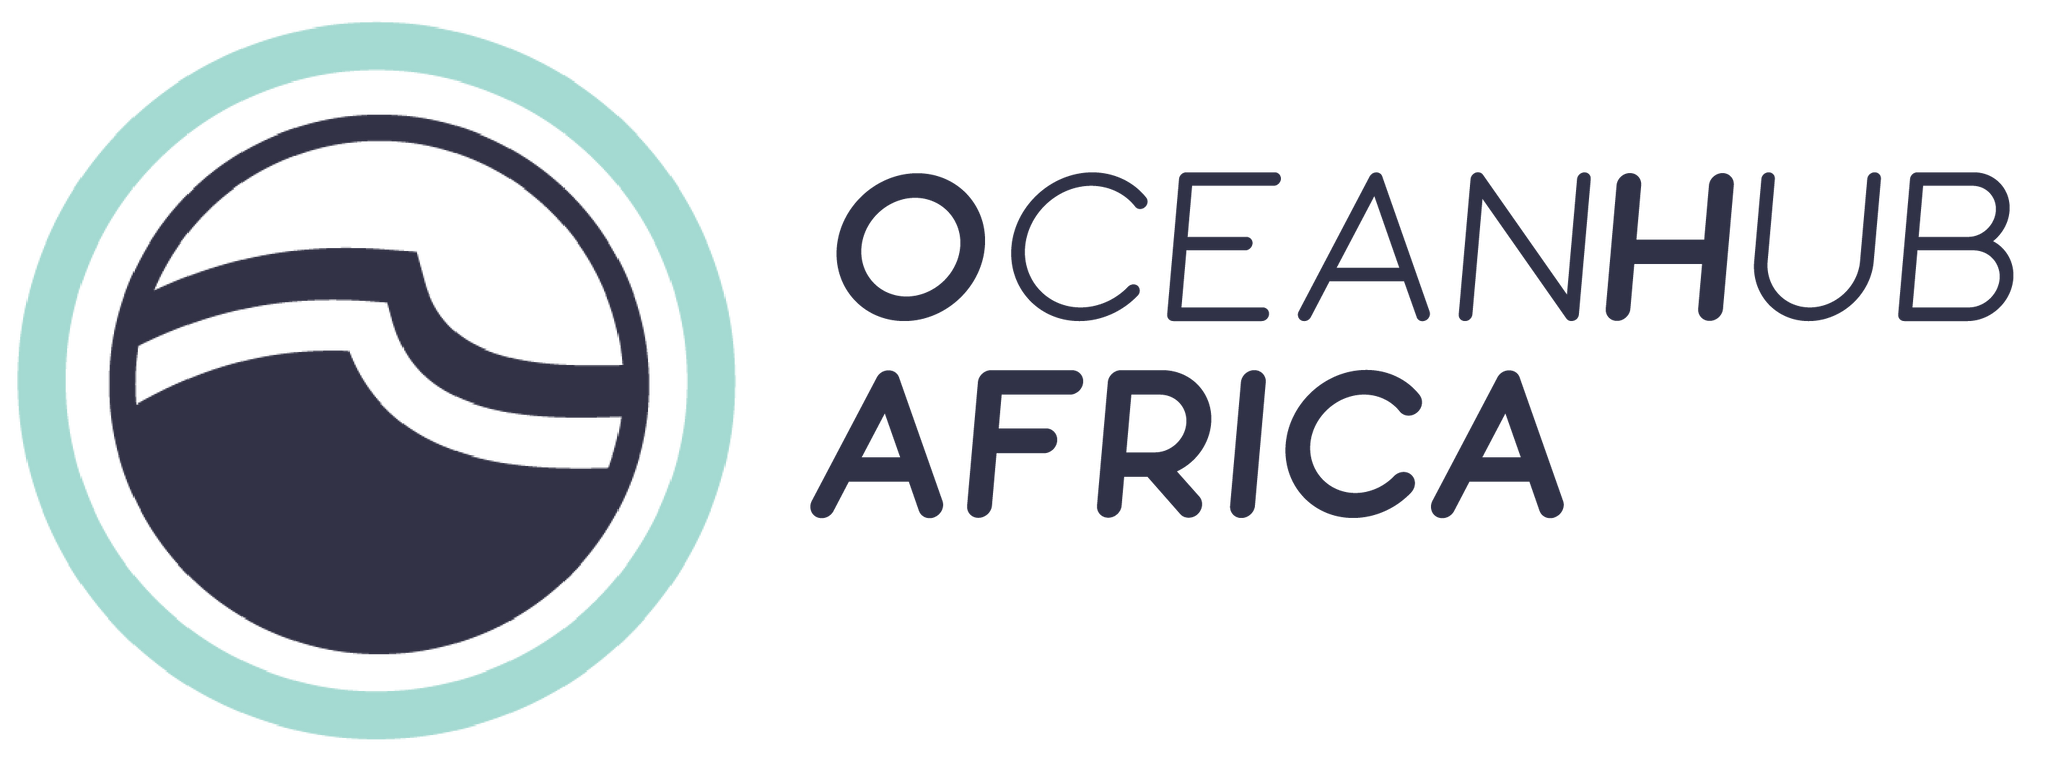 OceanHub Africa